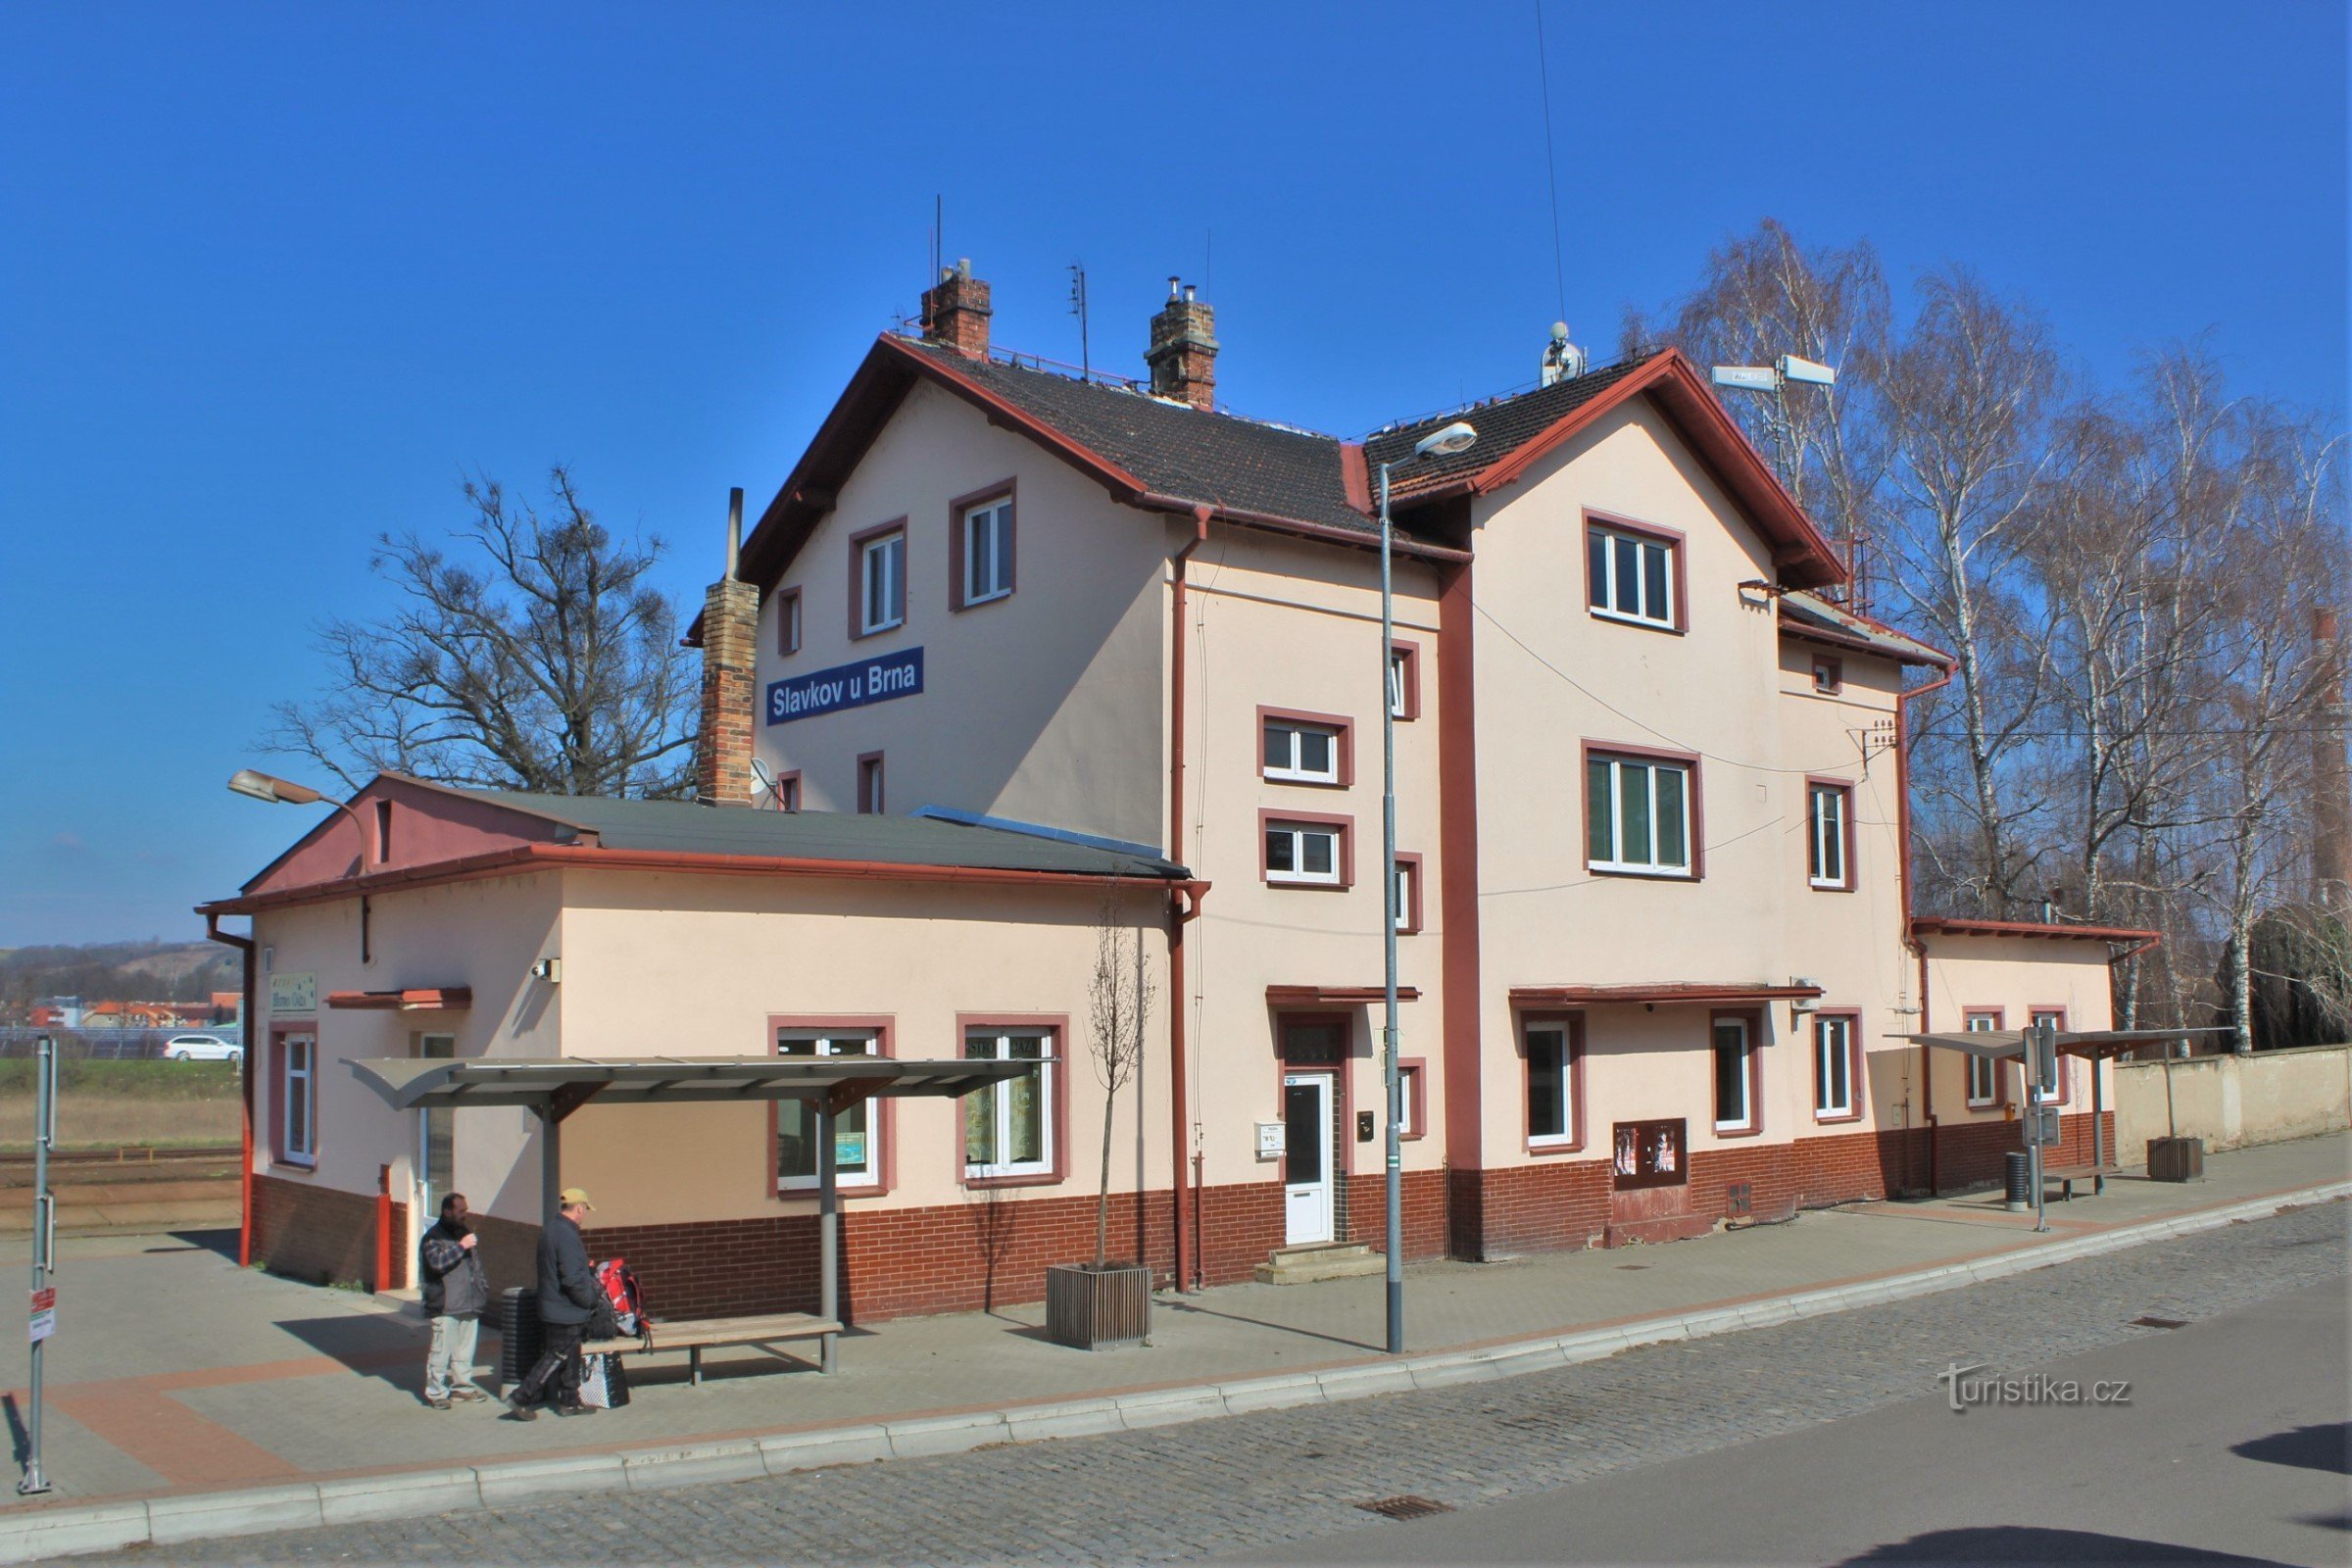 Zgrada postaje u Slavkovu kod Brna